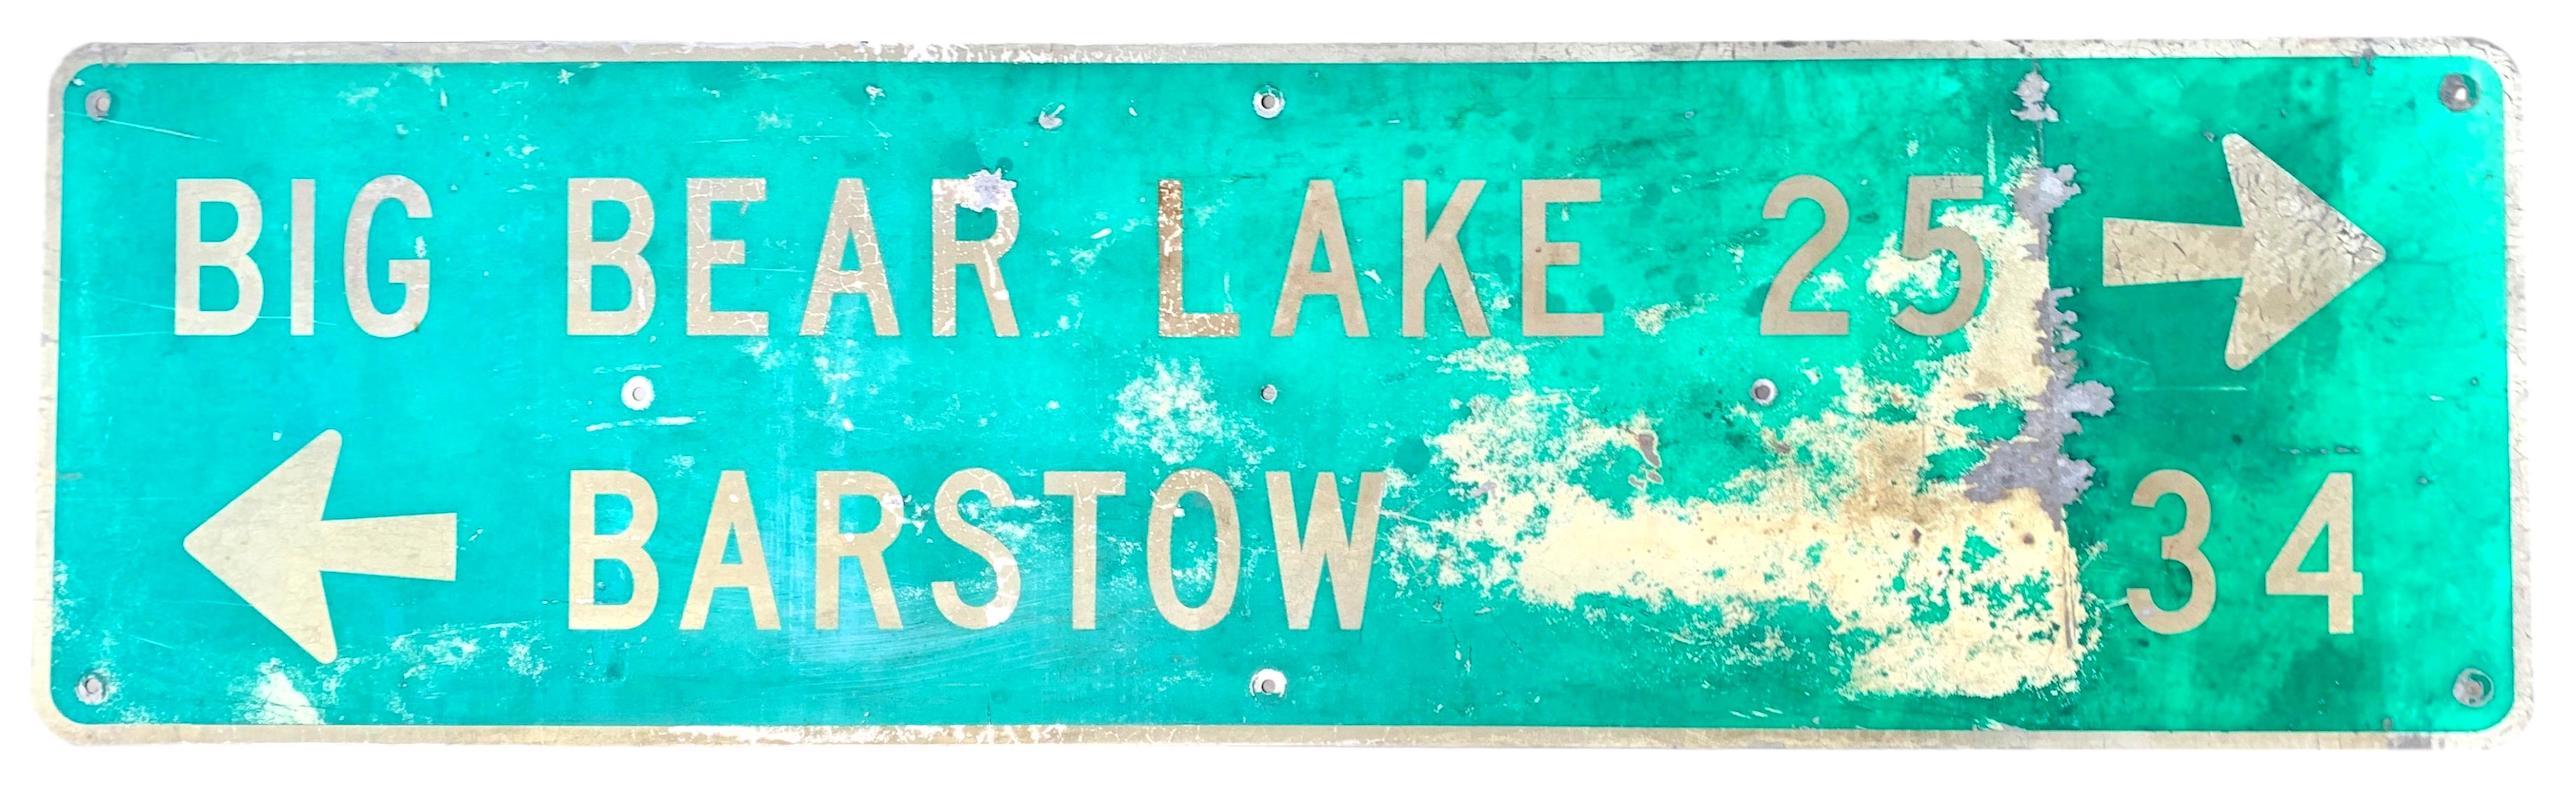 Sehr cooles altes kalifornisches Autobahnschild, das den Weg zum Big Bear Lake zeigt. Symbolträchtiger Ort in Kalifornien, cooles Stück Geschichte. Tolle Farbgebung und getragener Zustand. Ein fantastisches Stück kalifornischer Ephemera. Über 4 Fuß